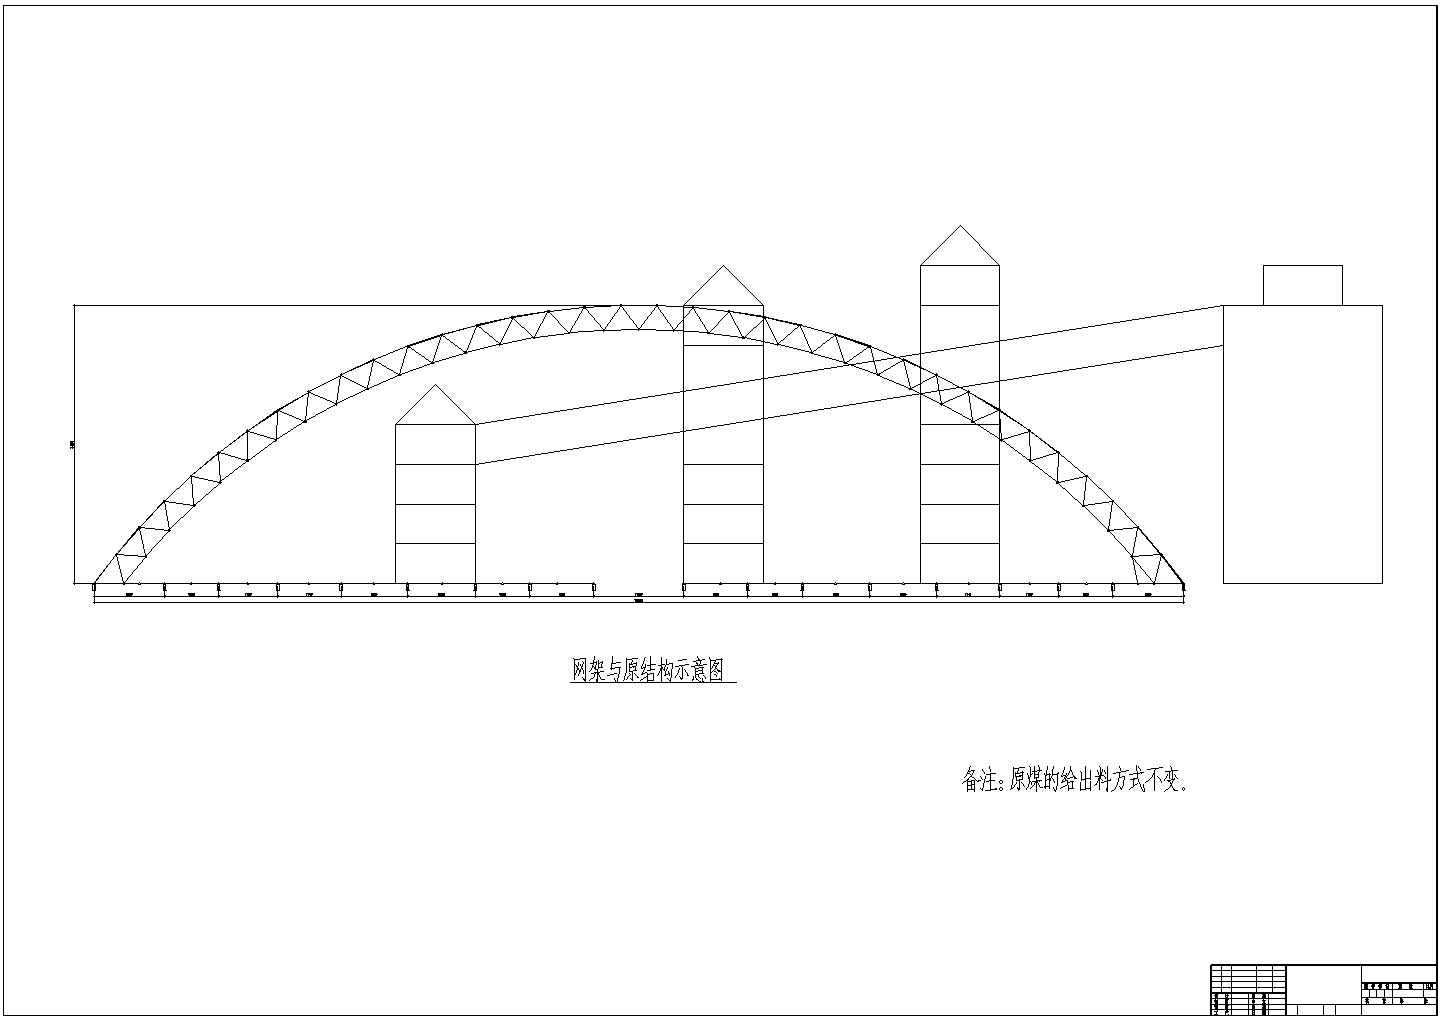 干煤棚结构设计图，供参考。